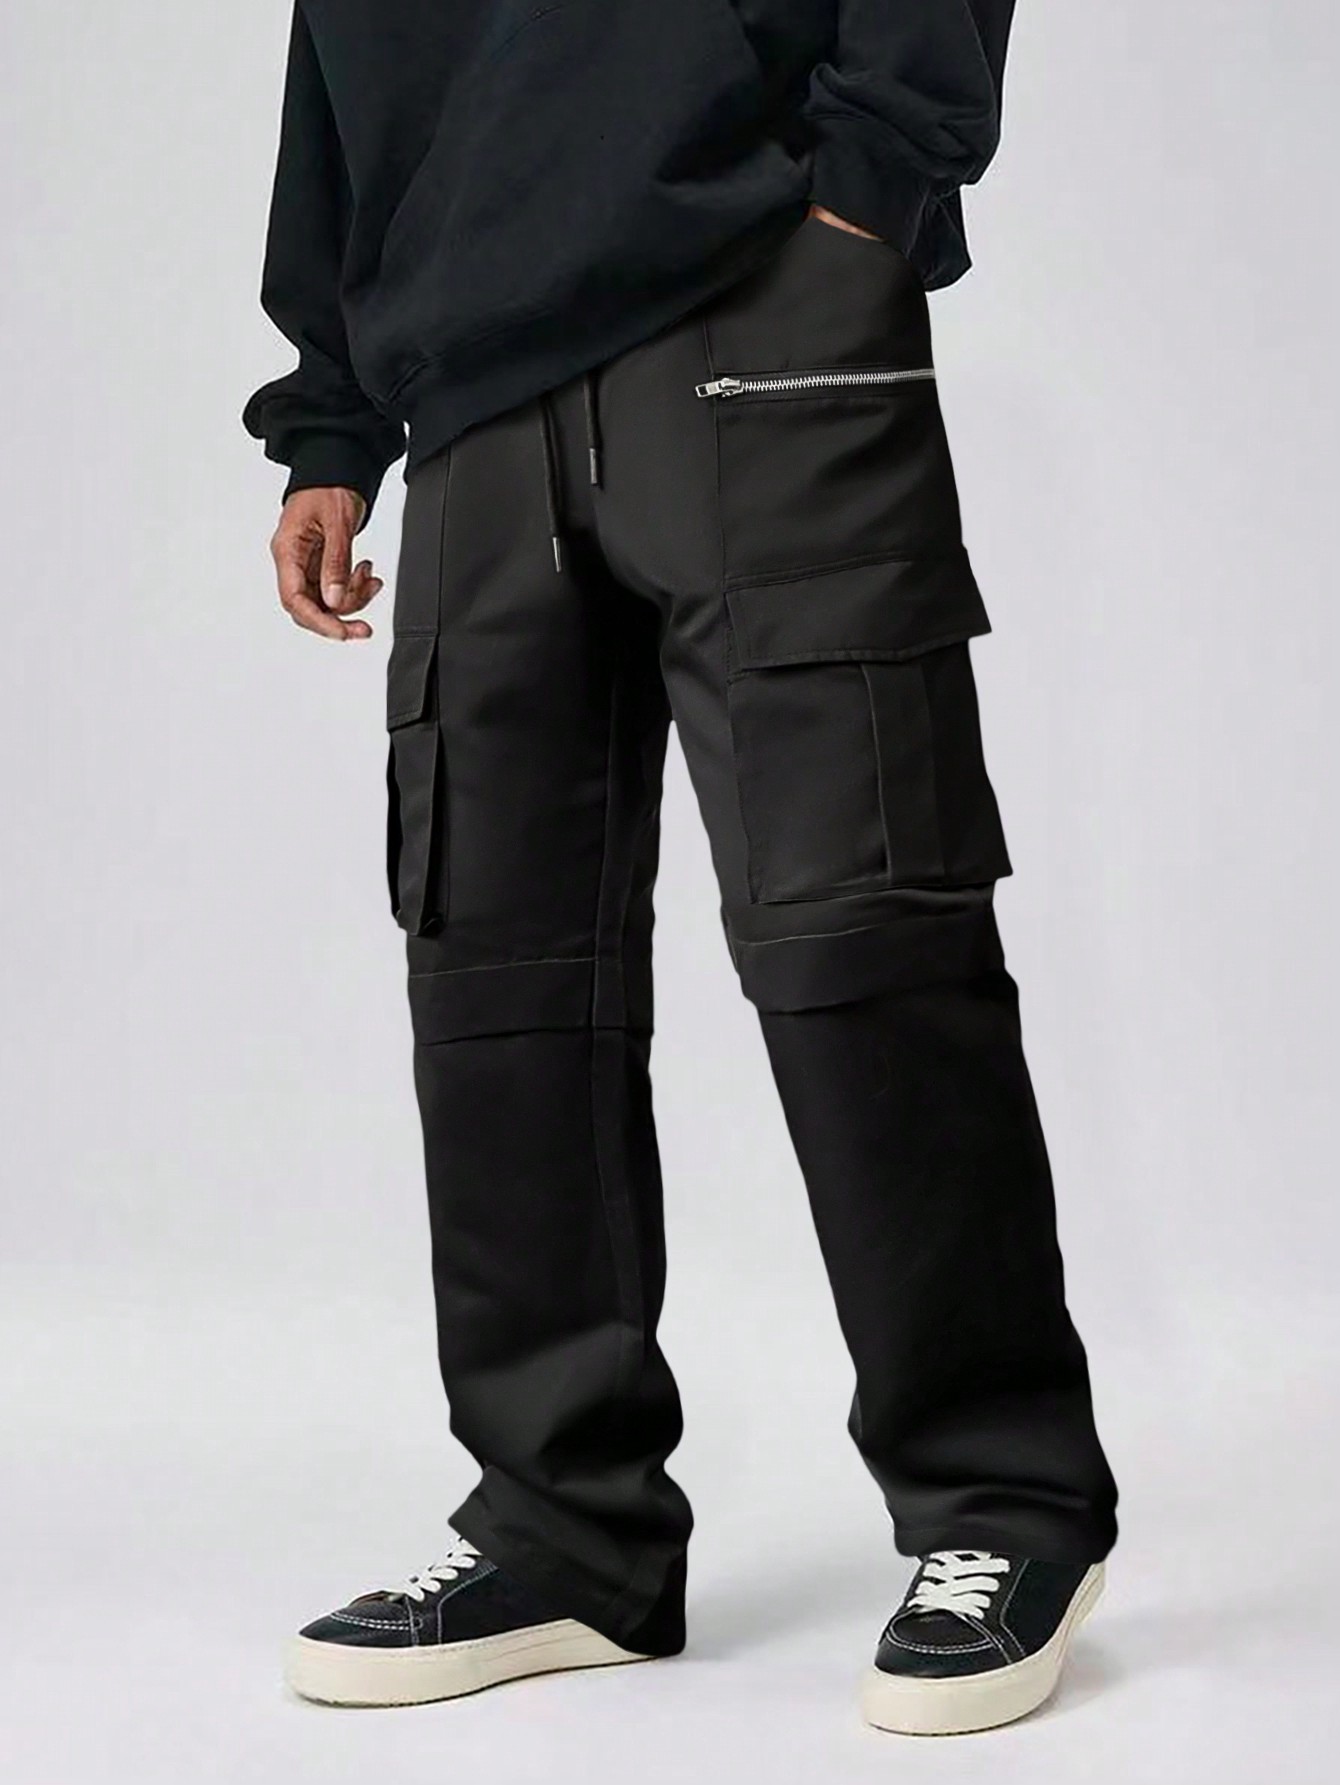 Мужские однотонные брюки-карго Manfinity EMRG, черный мужские брюки карго свободного кроя manfinity emrg темно серый